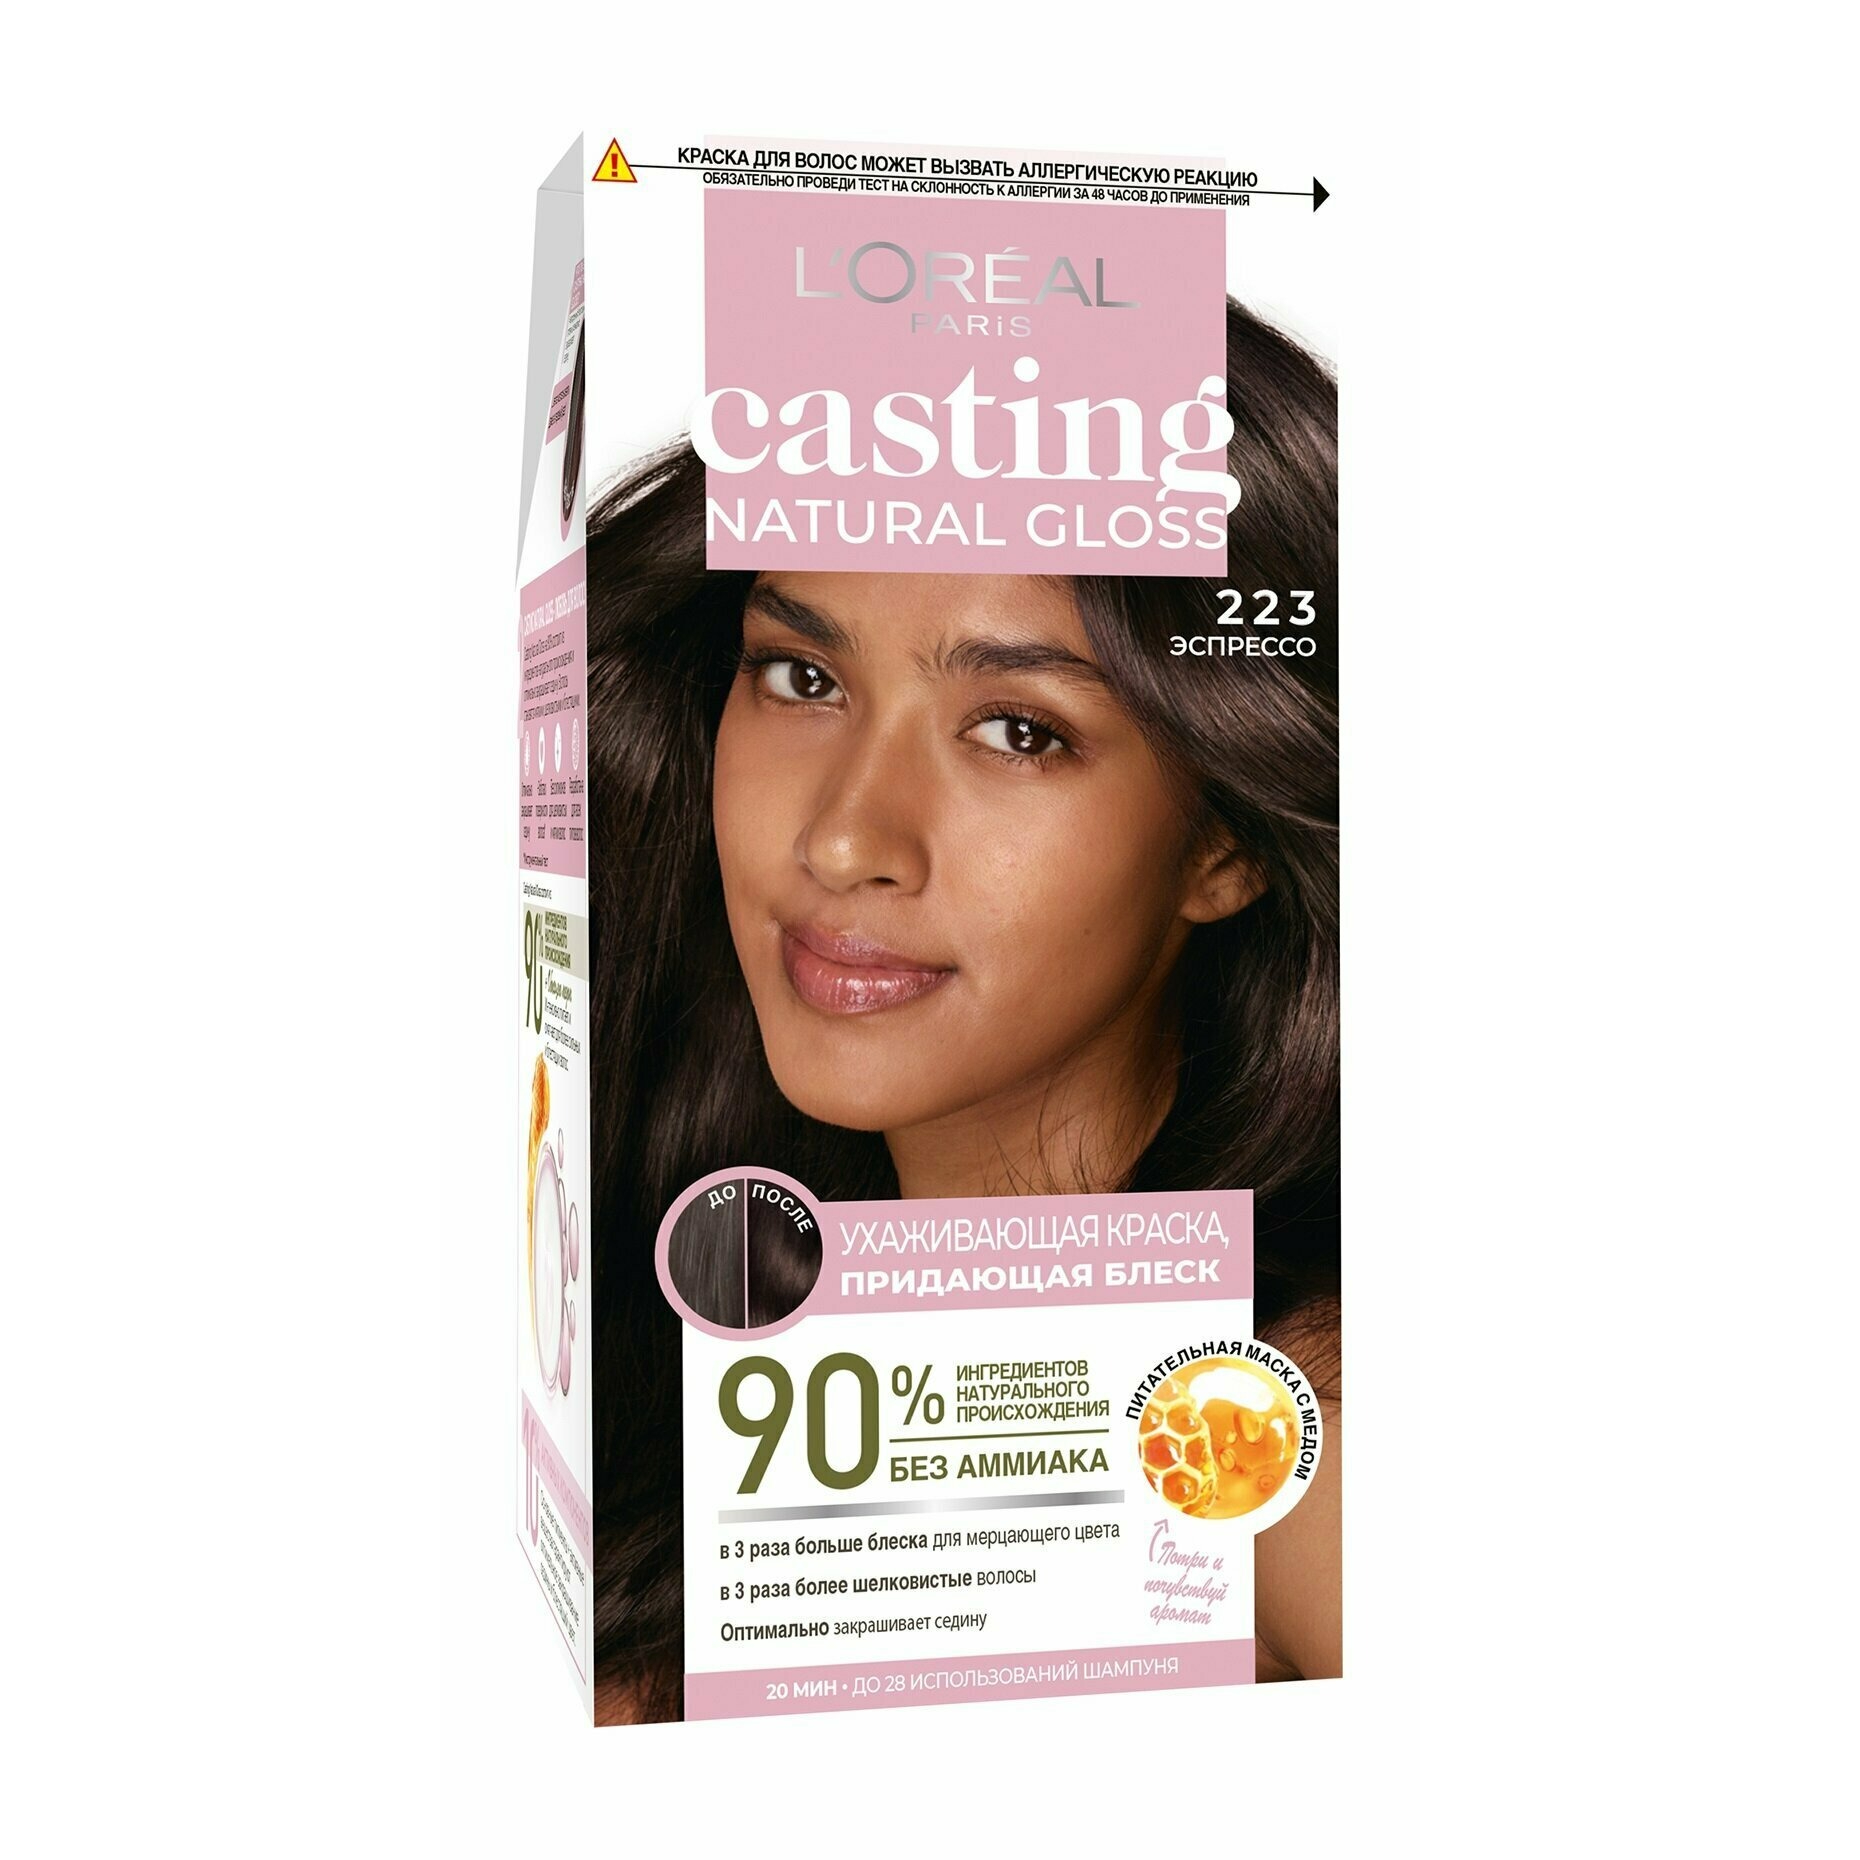 Краска для волос L'Oreal Casting Natural Gloss 223 Эспрессо маска перчатки для рук питательная омолаживающая